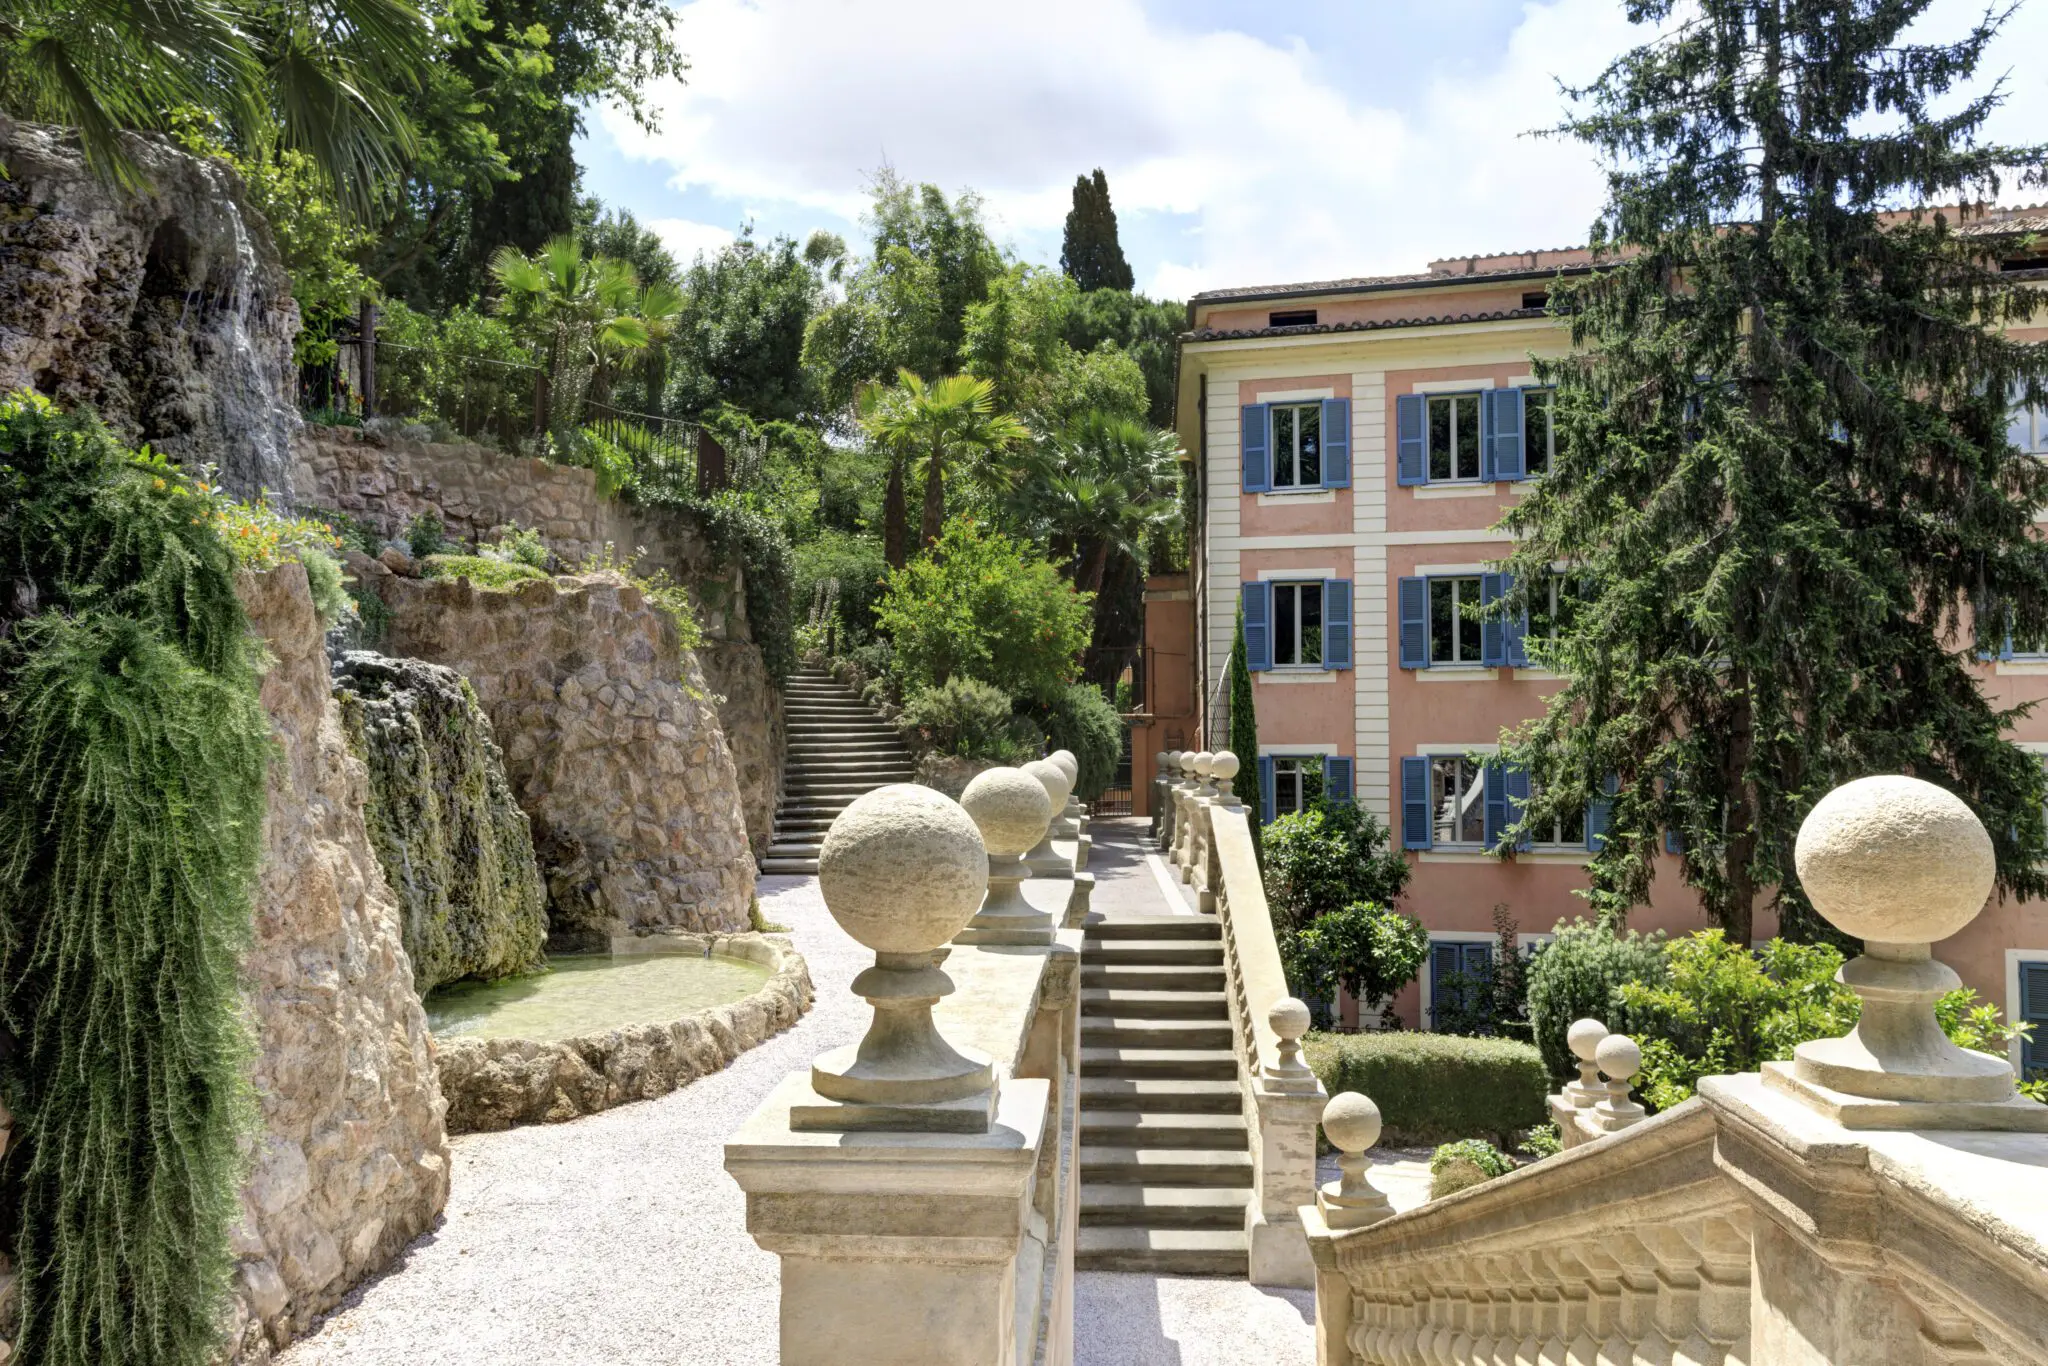 Nest Italy: Luxury Hotel in Rome